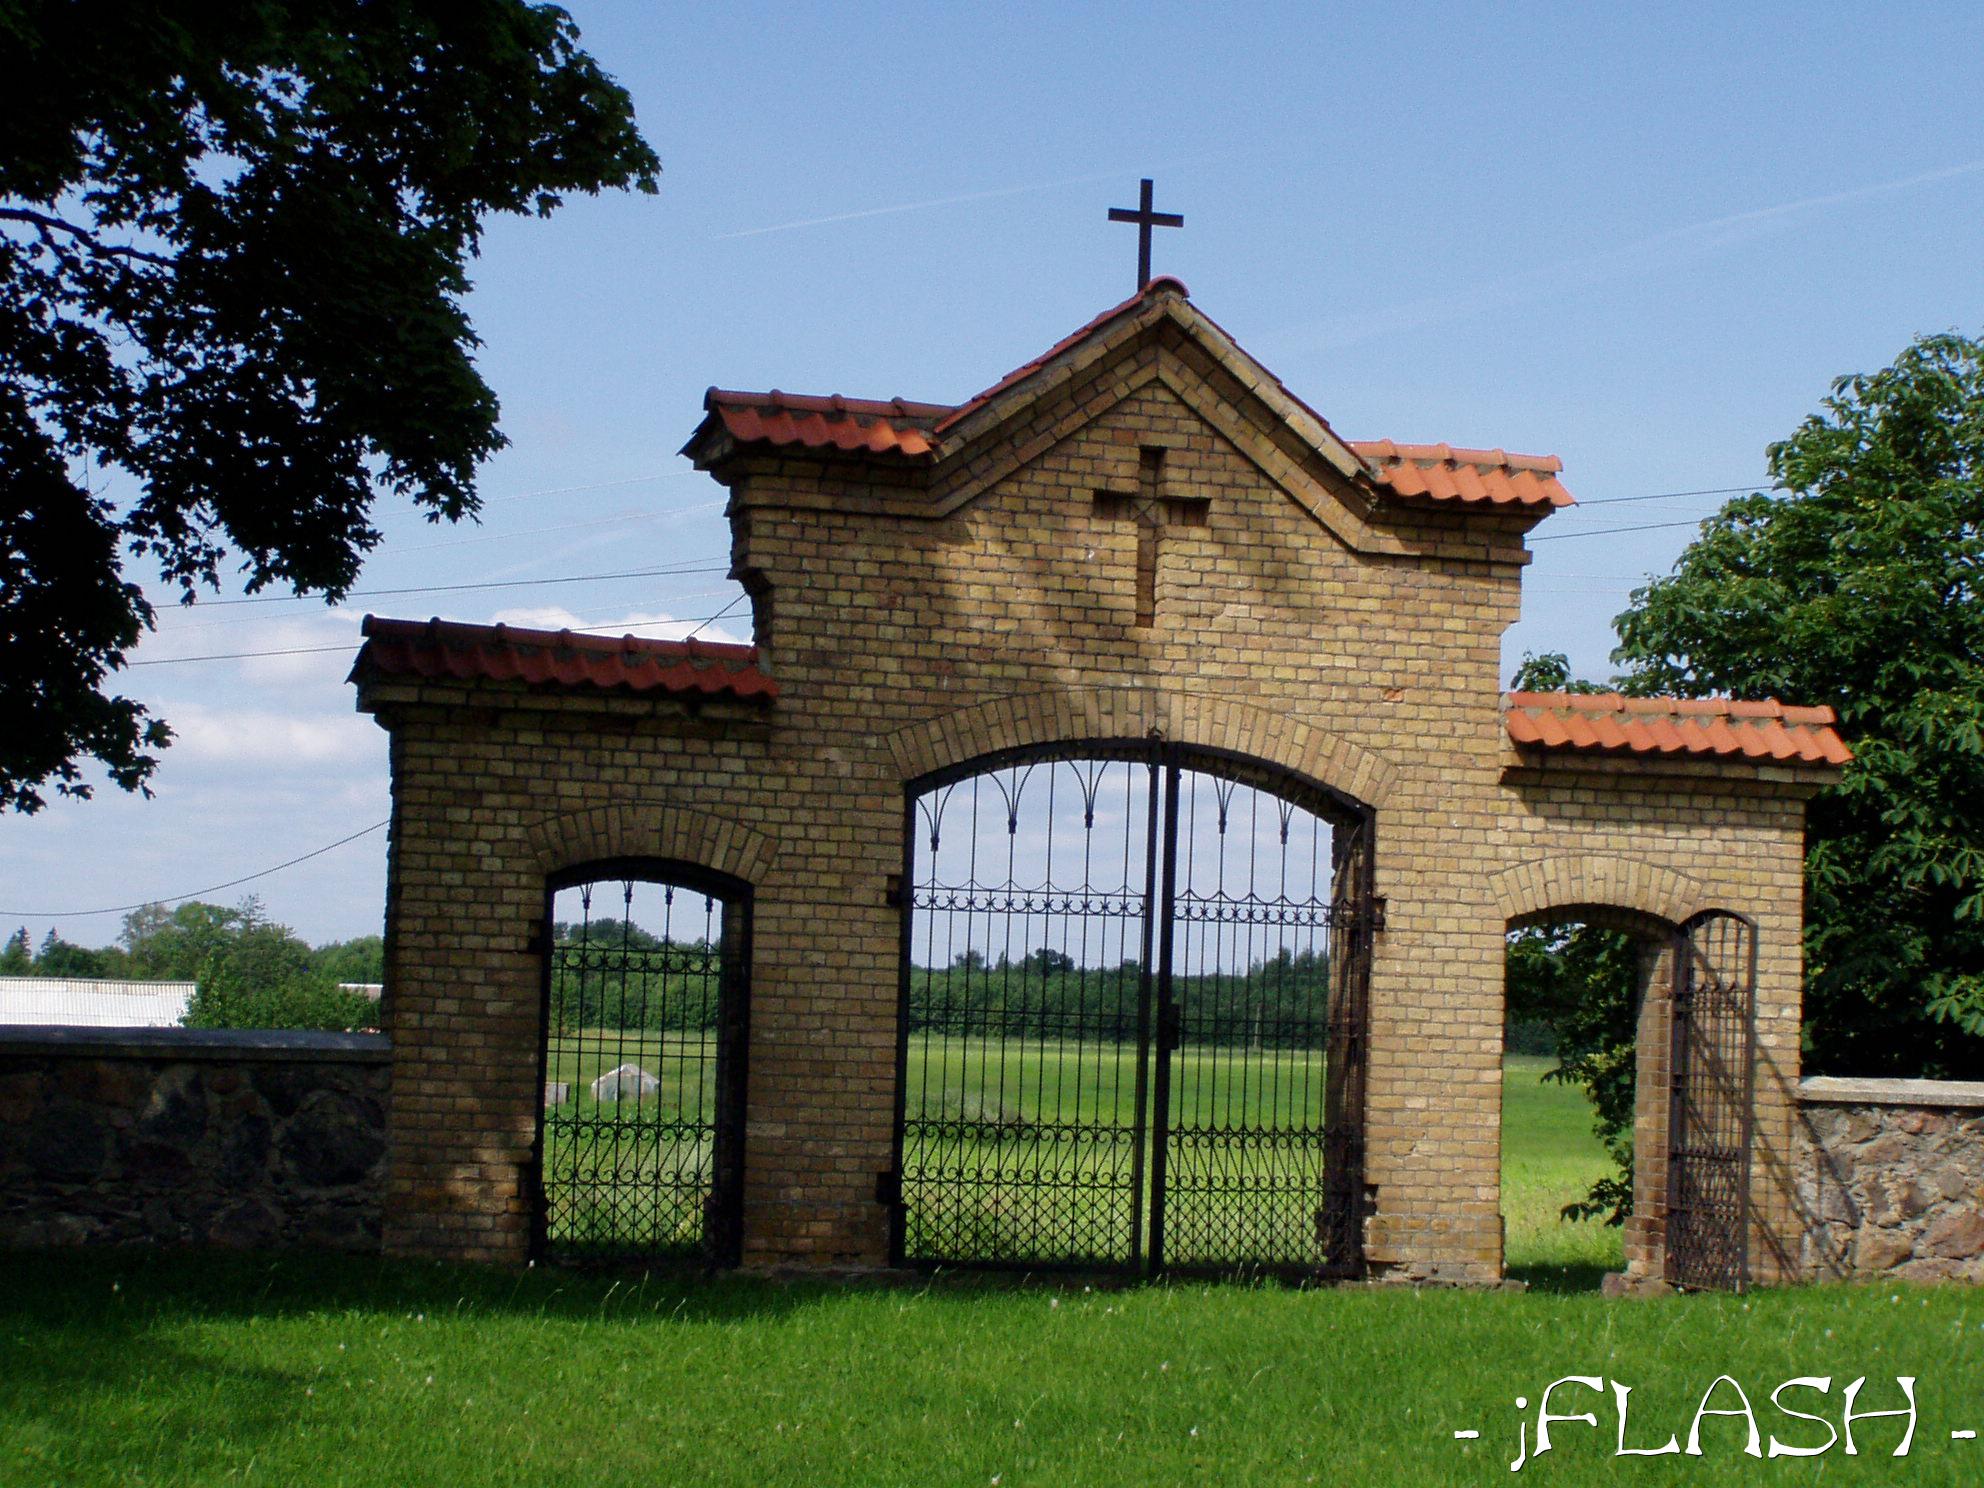 Püha Martini kiriku värav
Võtmesõnad: värav kirik